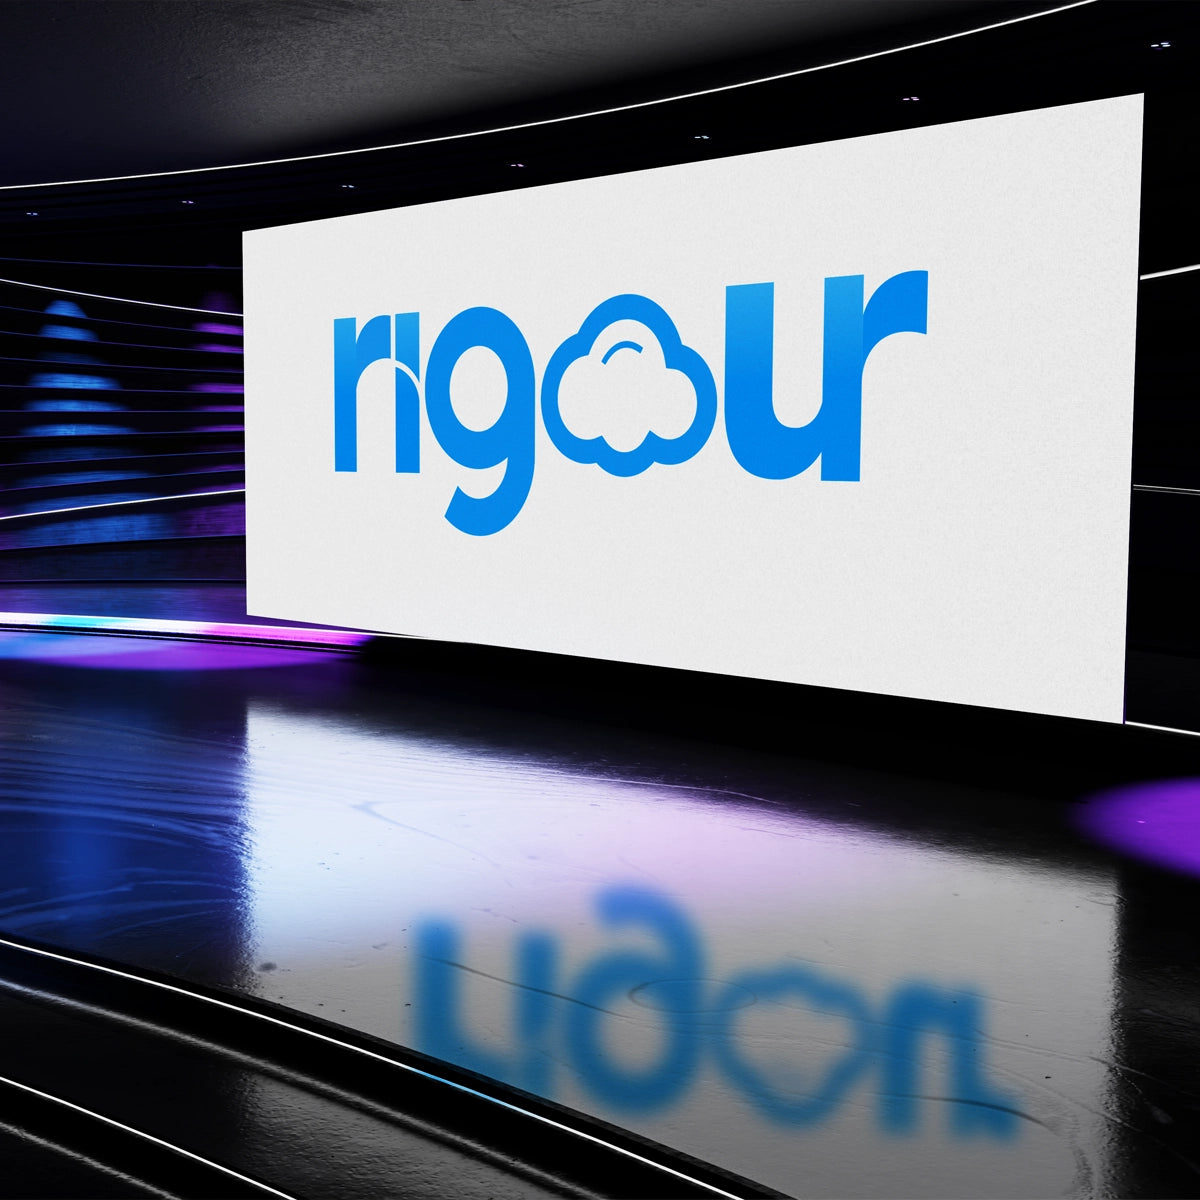 RIGOUR.CO.IN